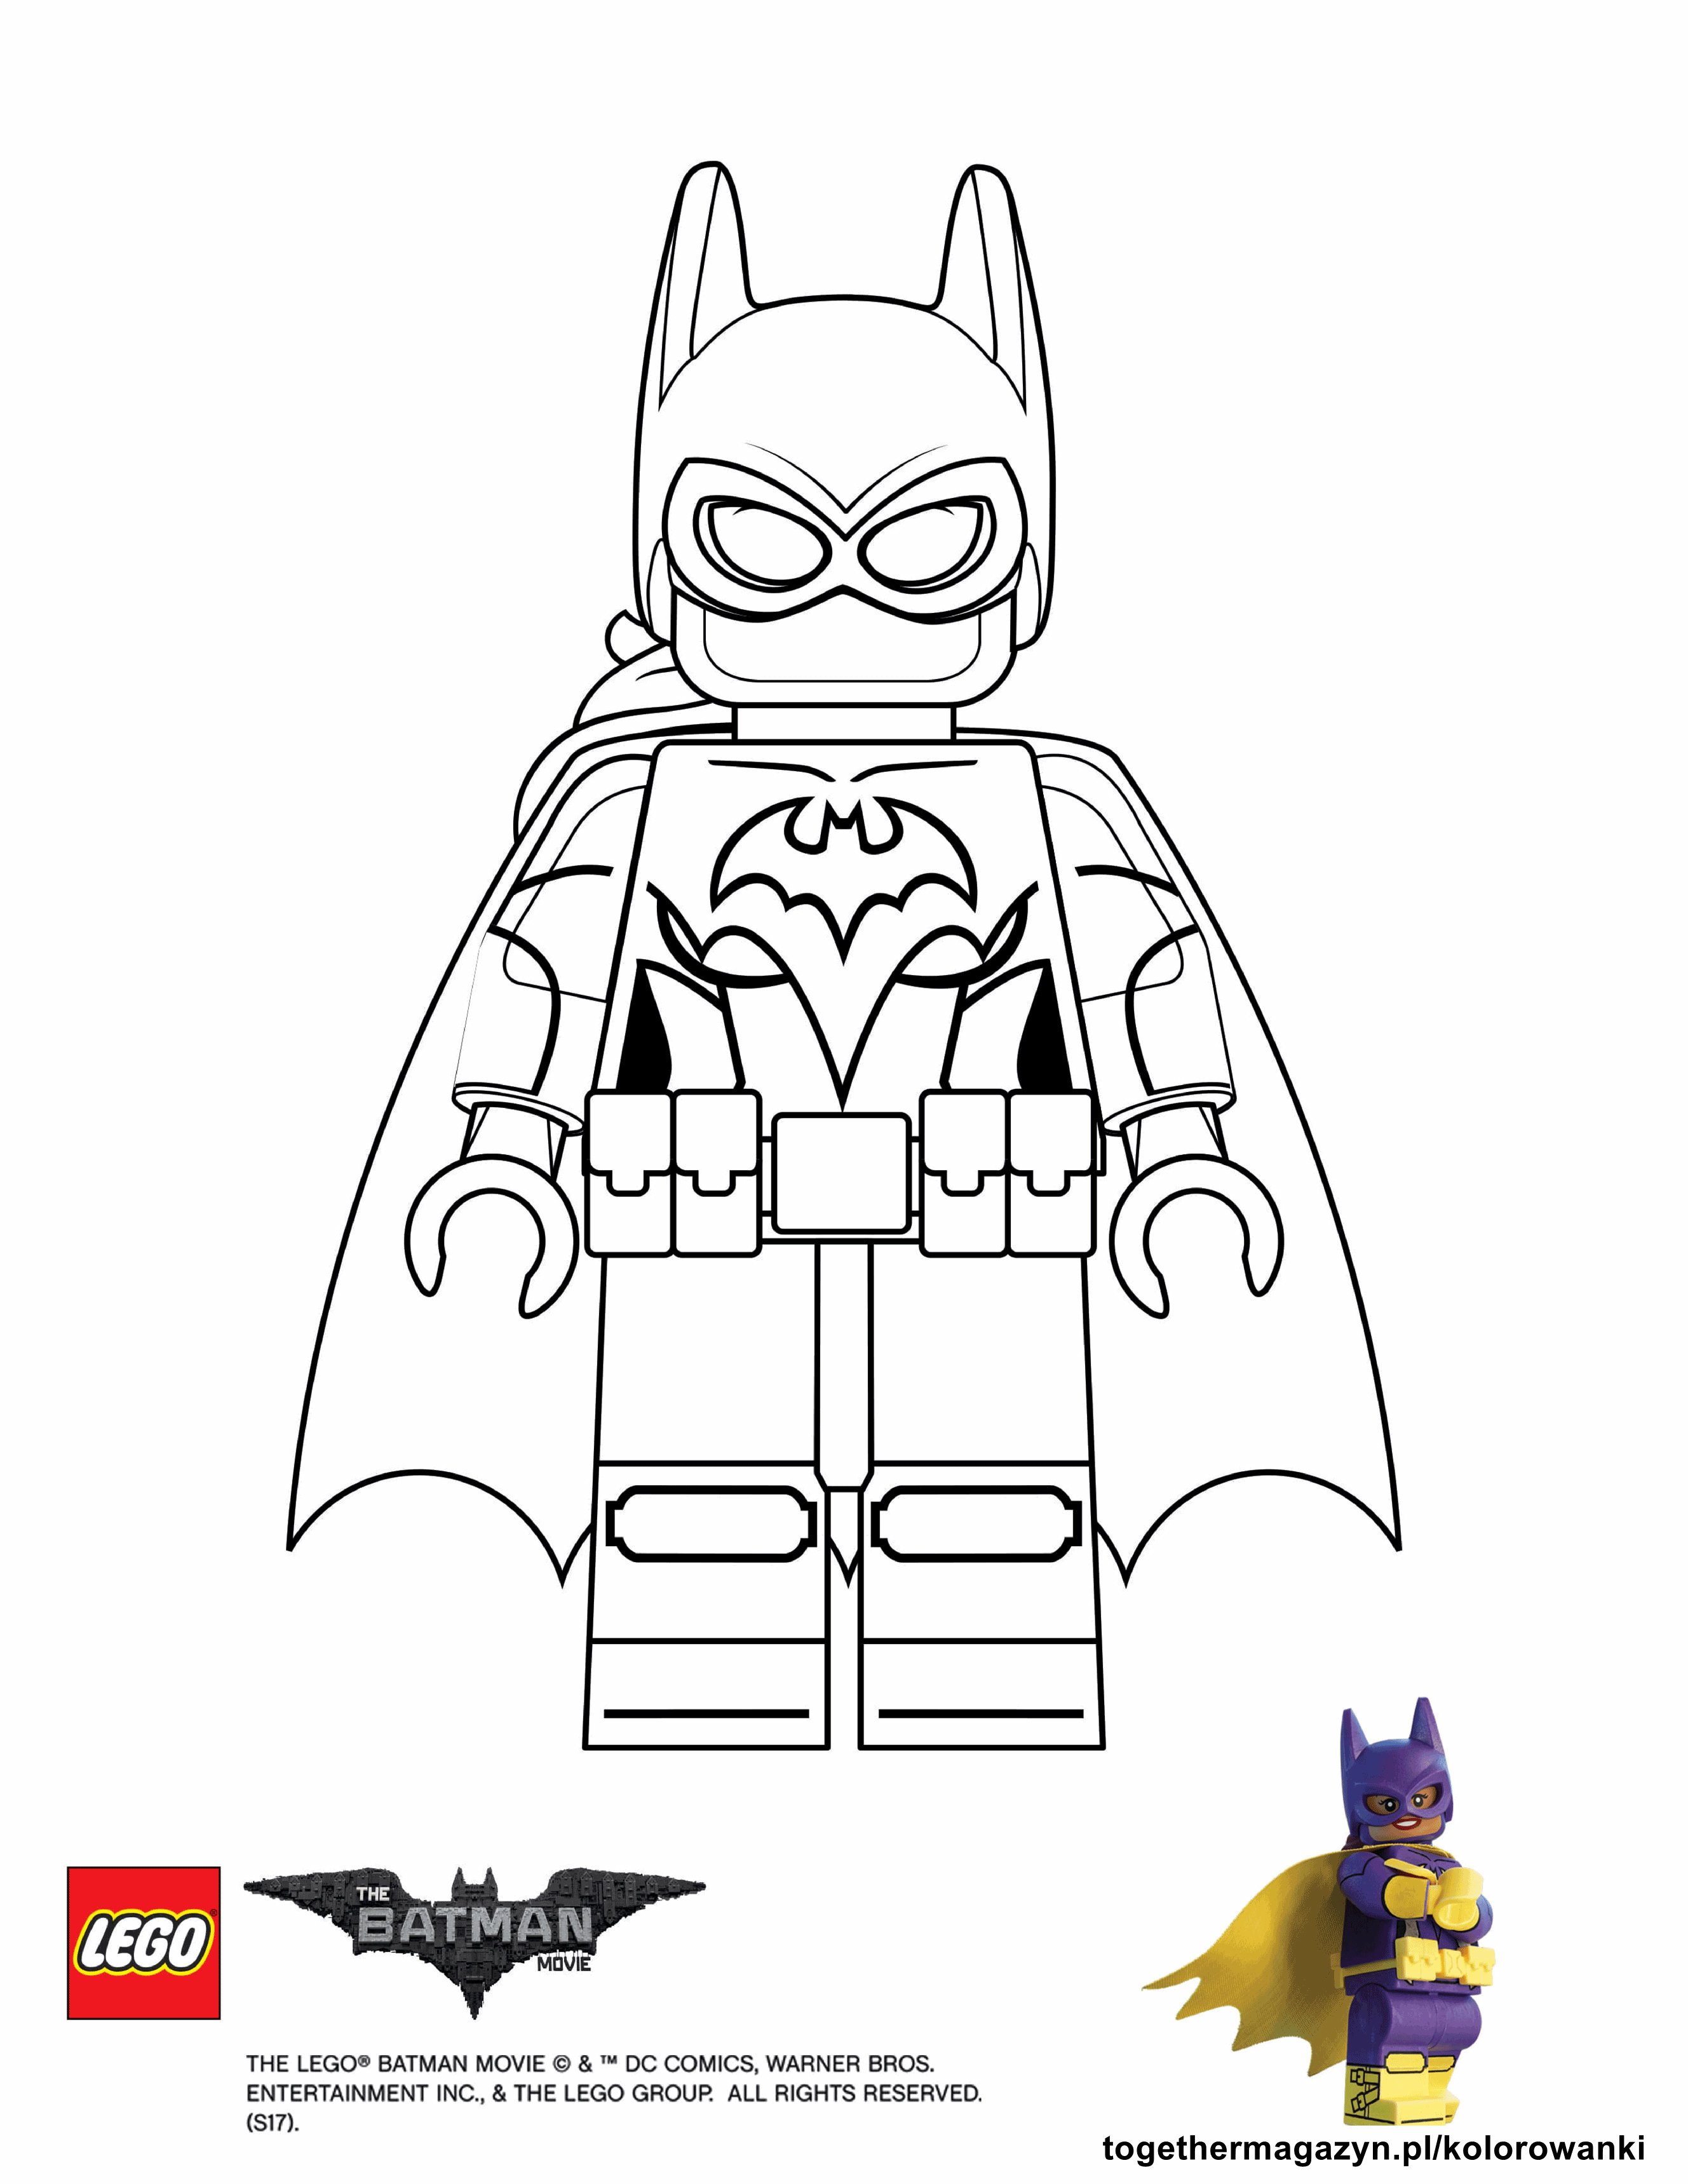 Lego Batman Together Magazyn